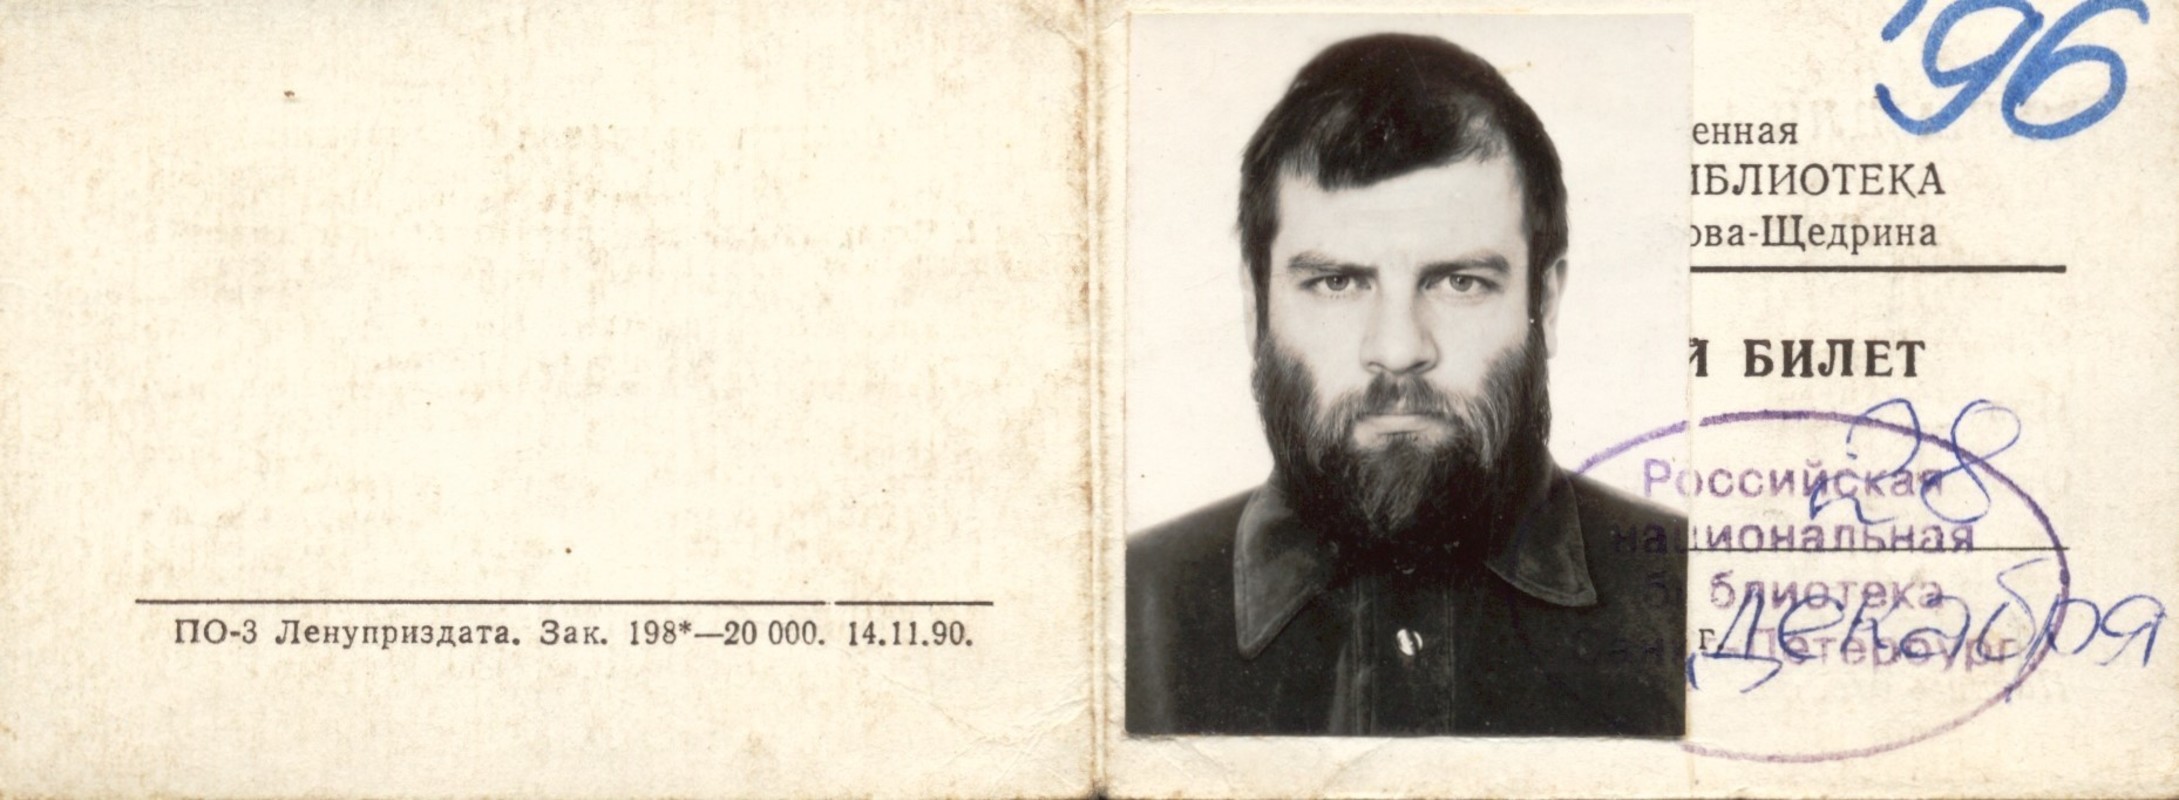 Читательский билет Российской национальной библиотеки на имя Ивана Сотникова